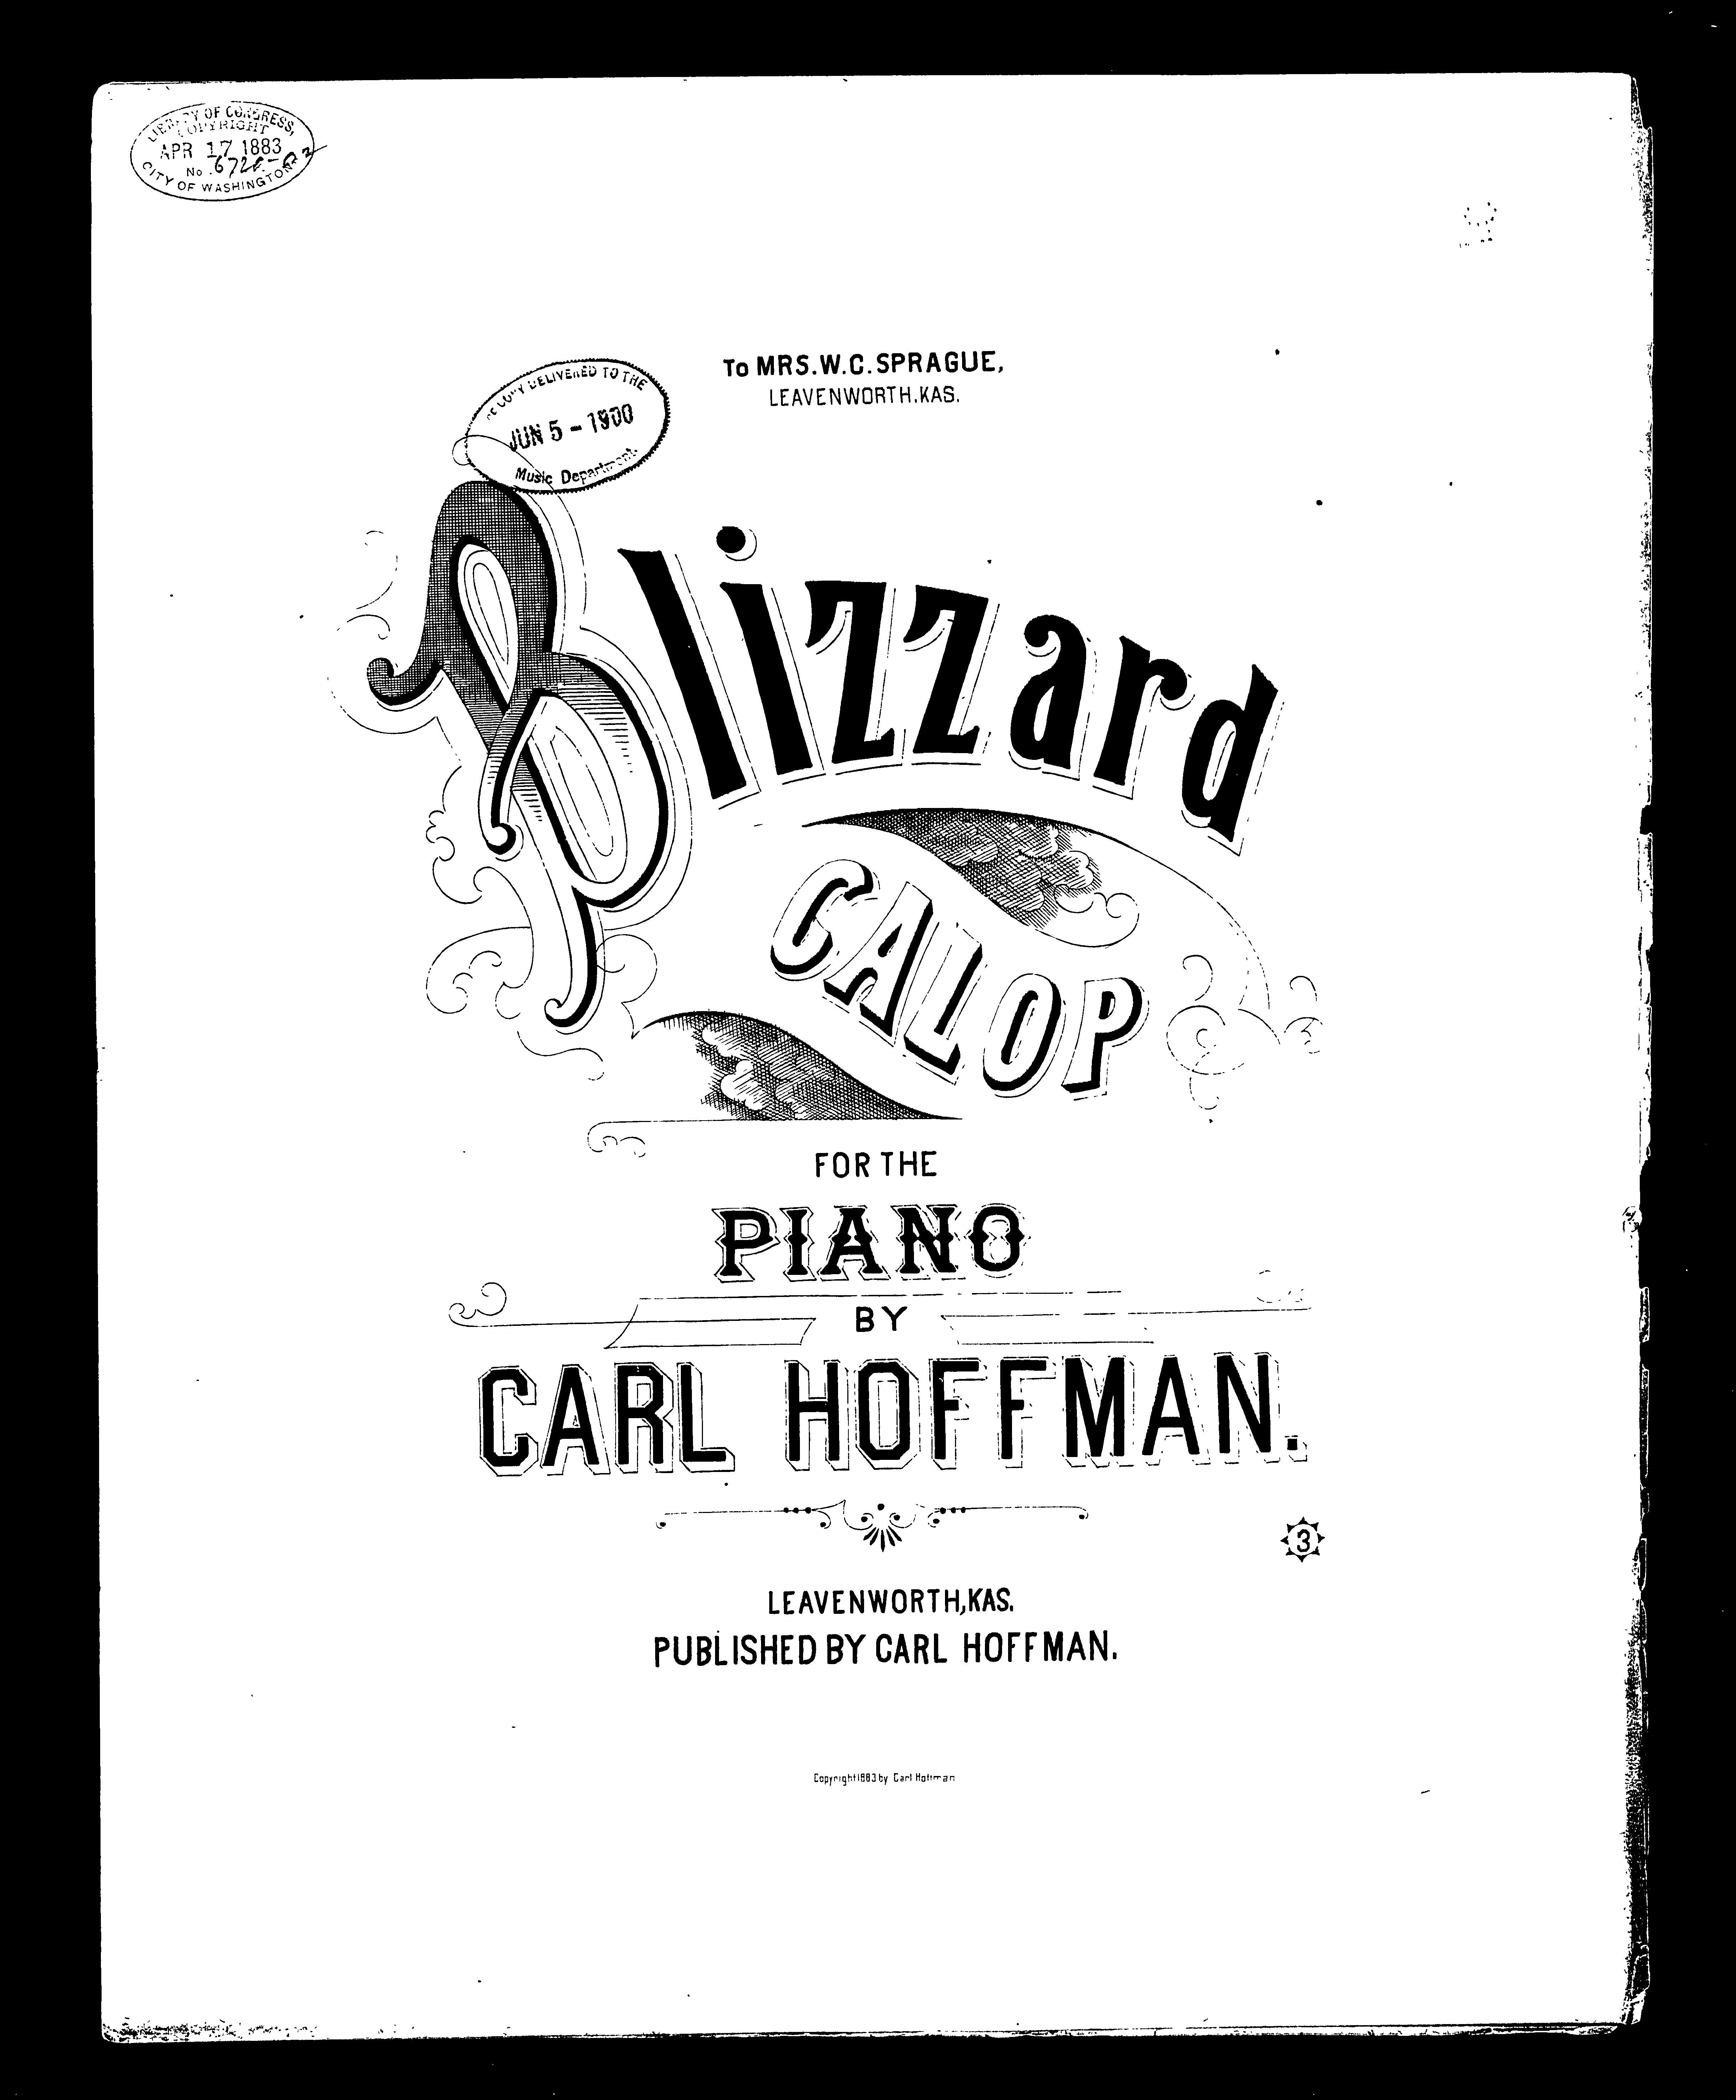 "Blizzard" sheet music